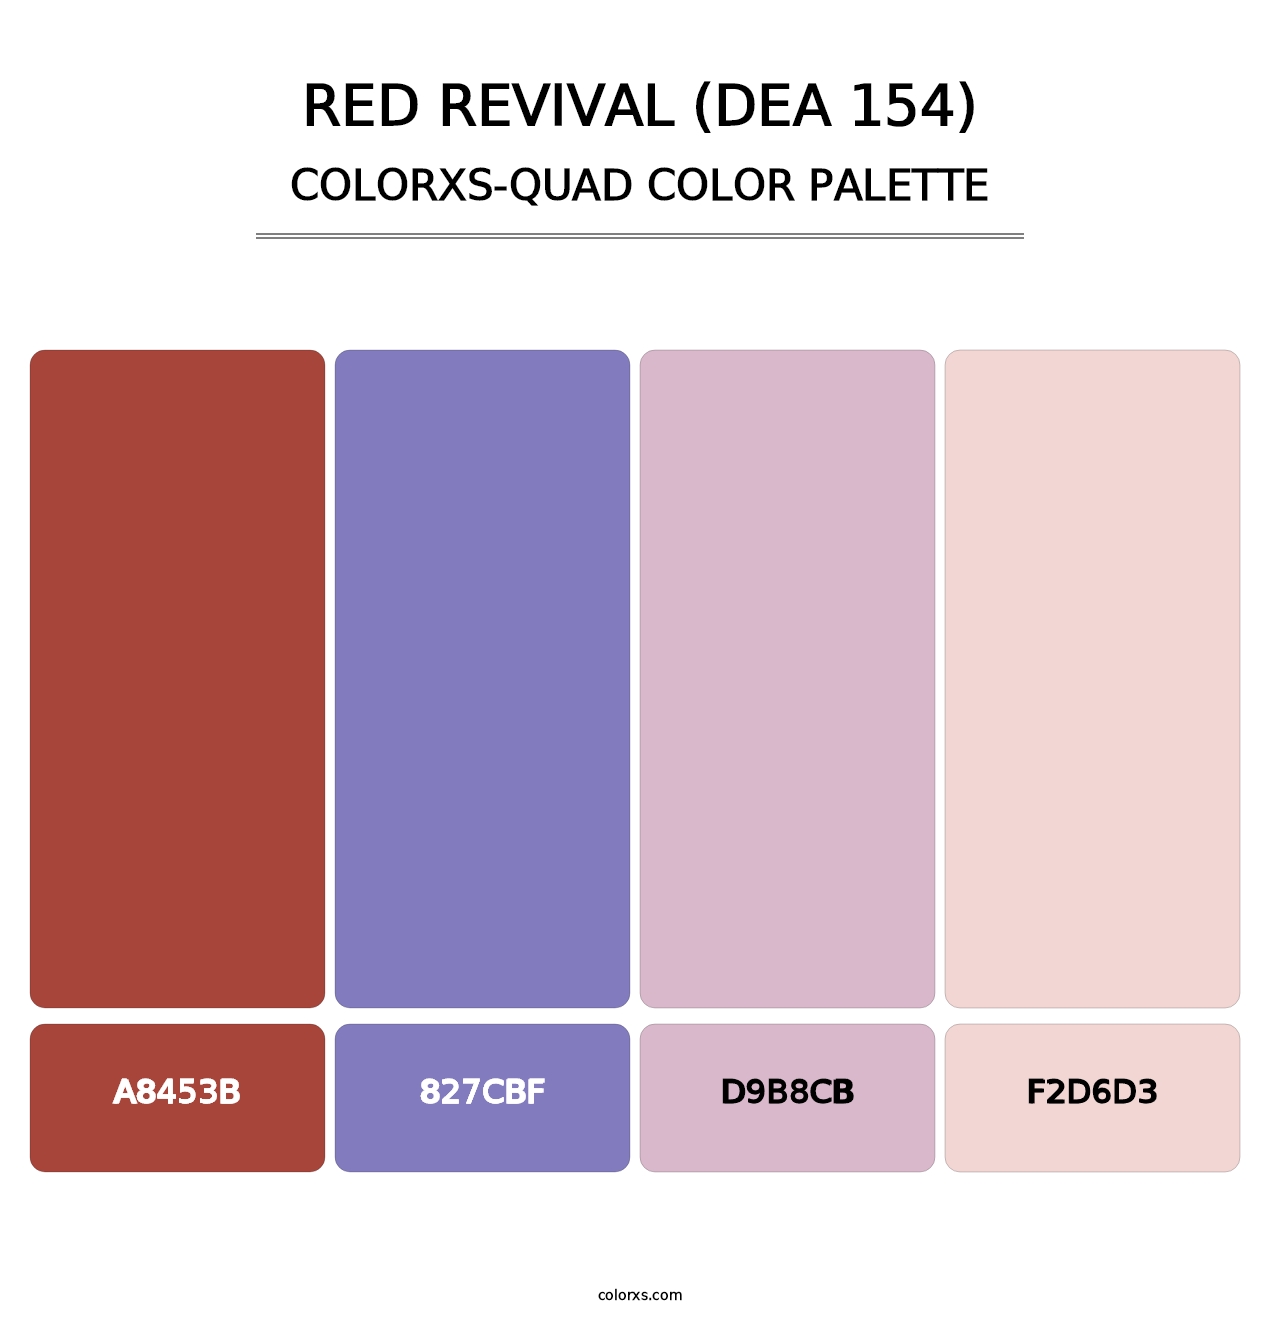 Red Revival (DEA 154) - Colorxs Quad Palette